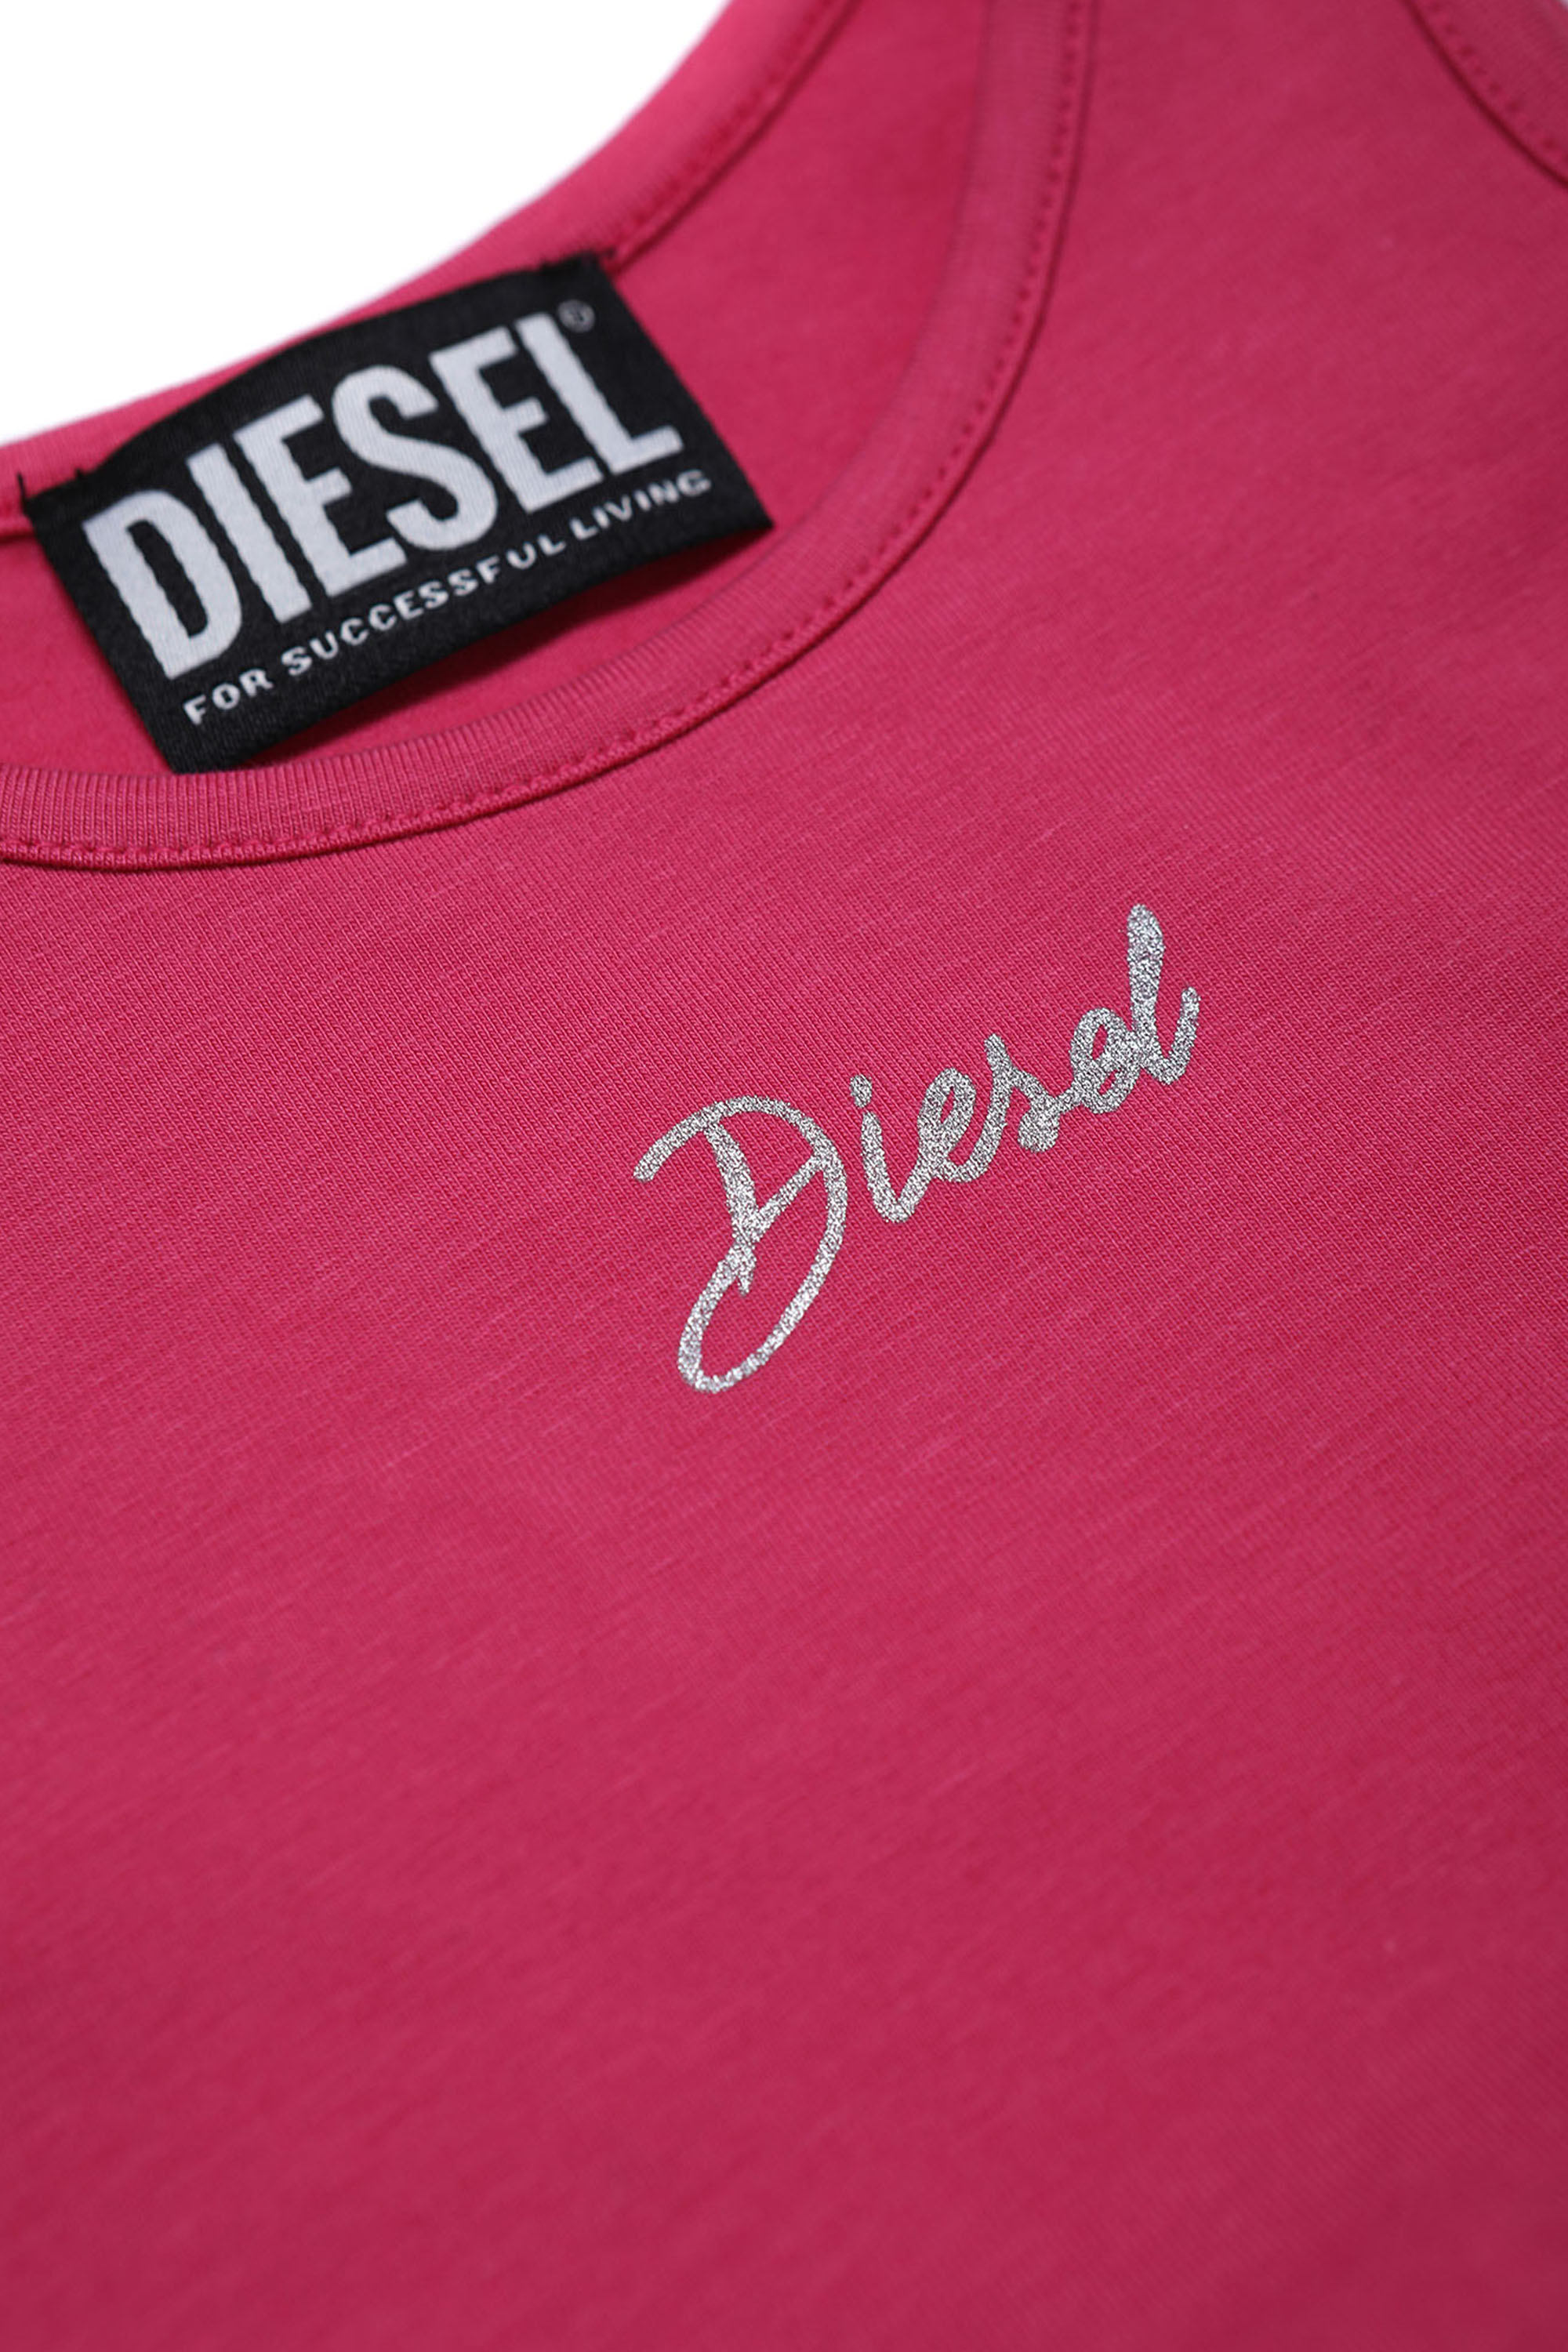 Diesel - TRISAB, Rose - Image 3